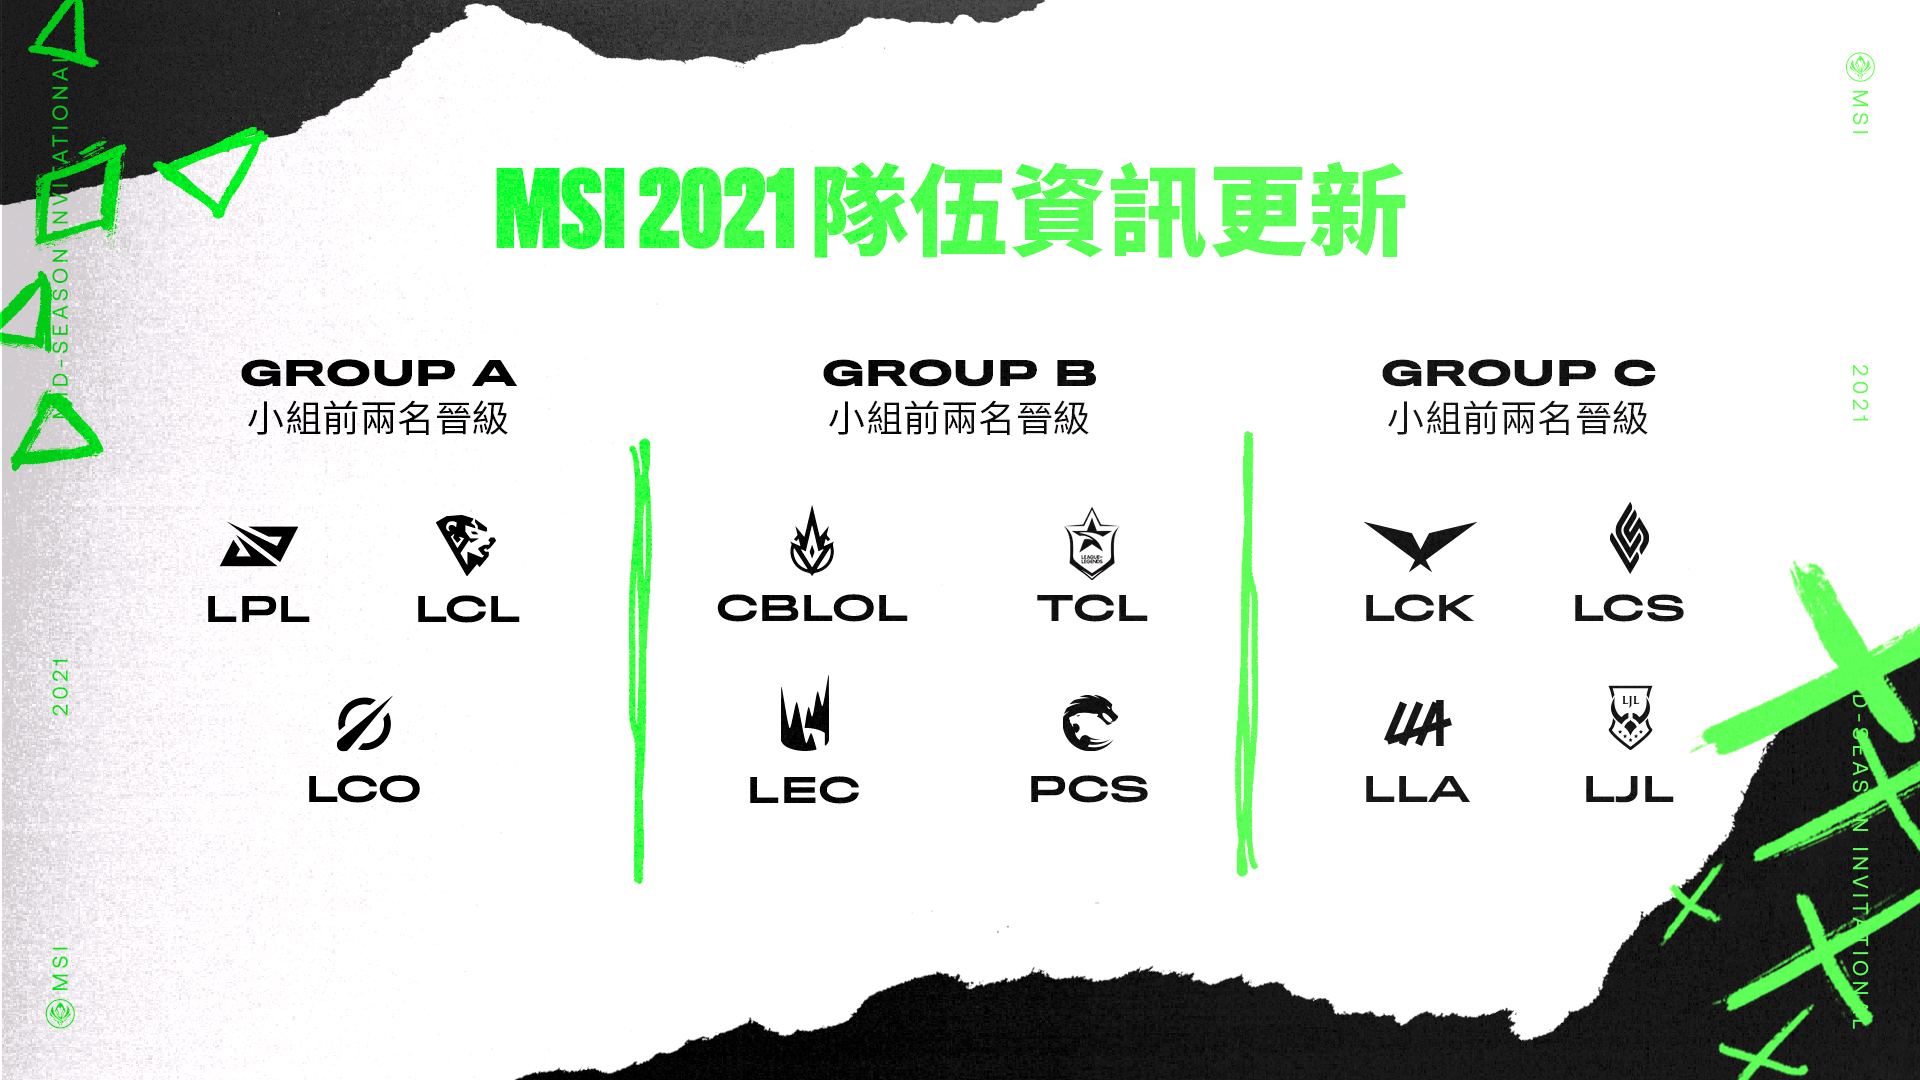 《英雄联盟》越南VCS 代表队因疫情影响不参加2021 MSI 季中邀请赛